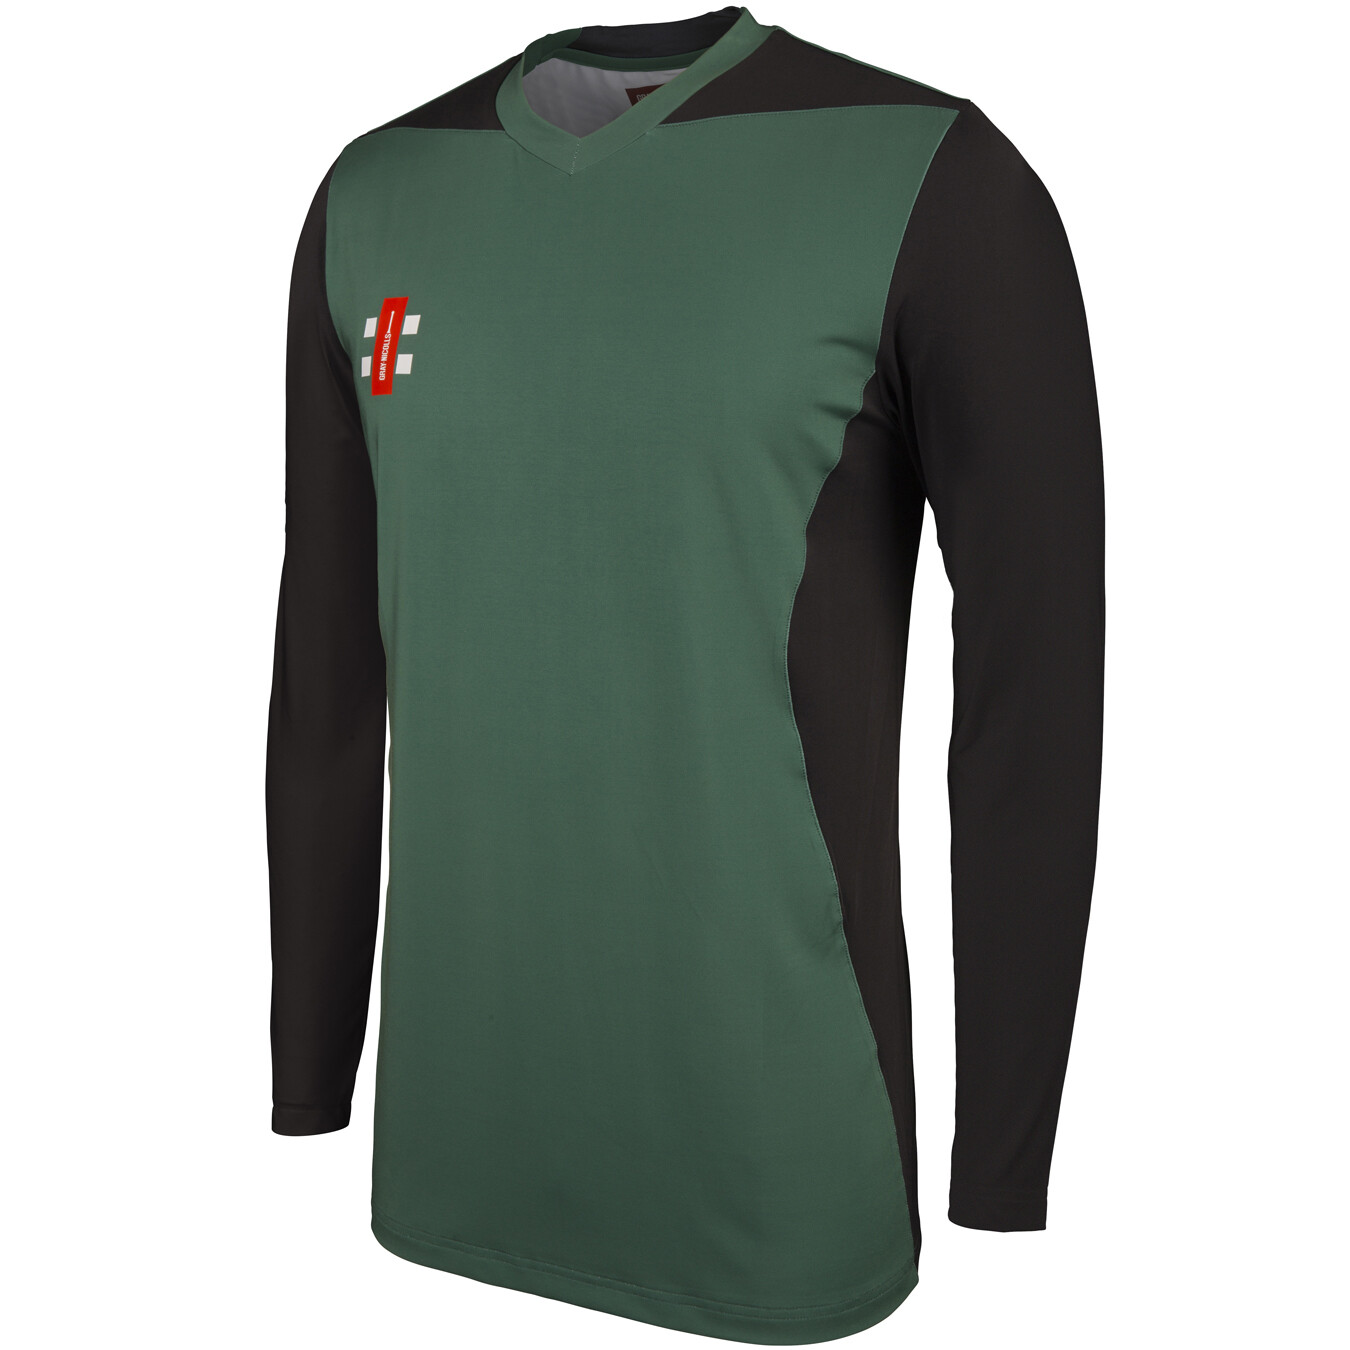 Stokesley Pro Performance Long Sleeve Training Shirt